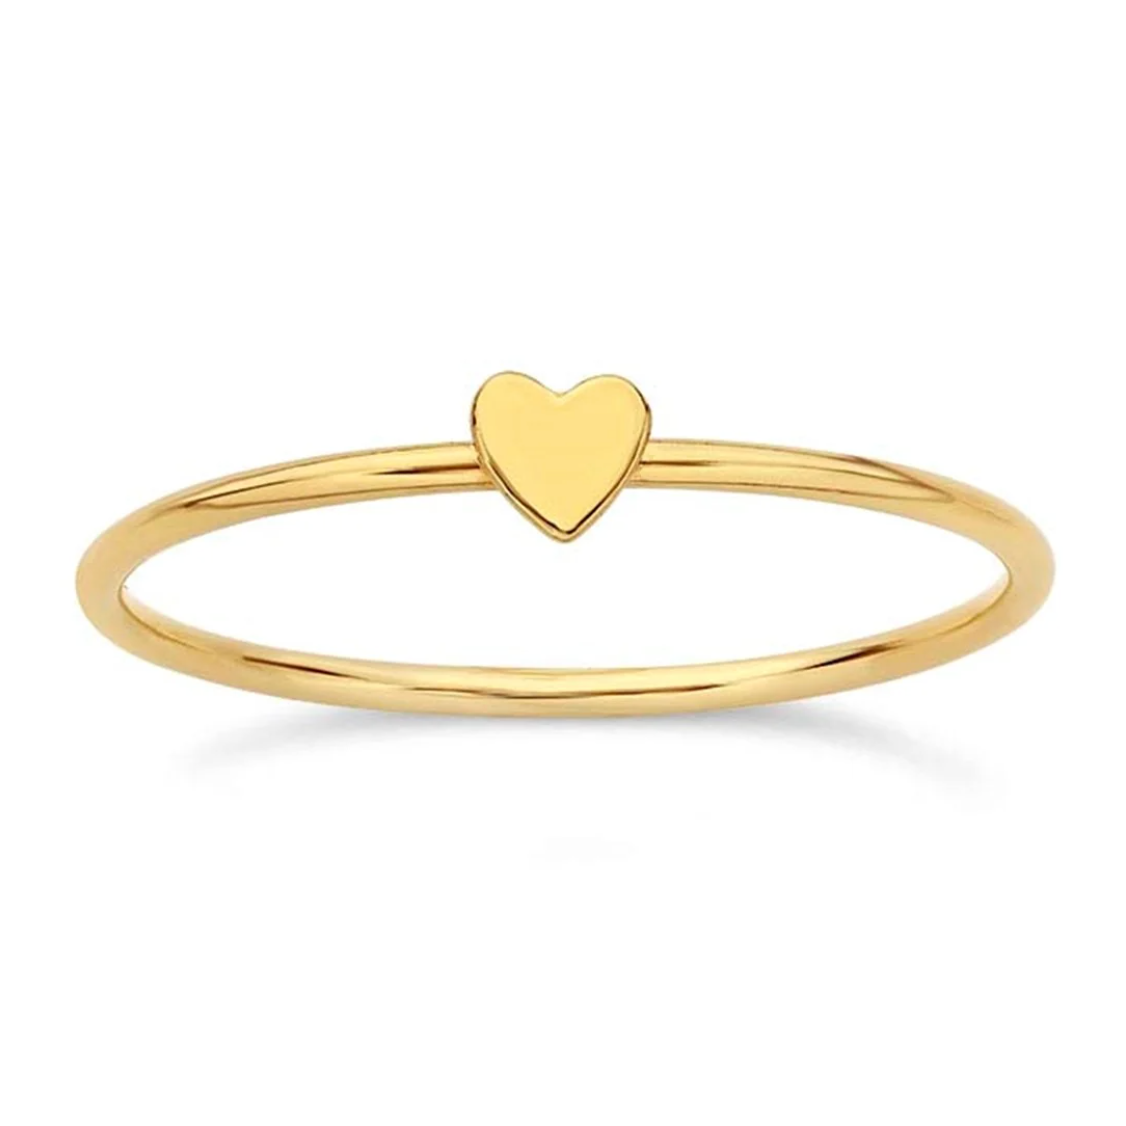 Mini Heart Ring - Going Golden